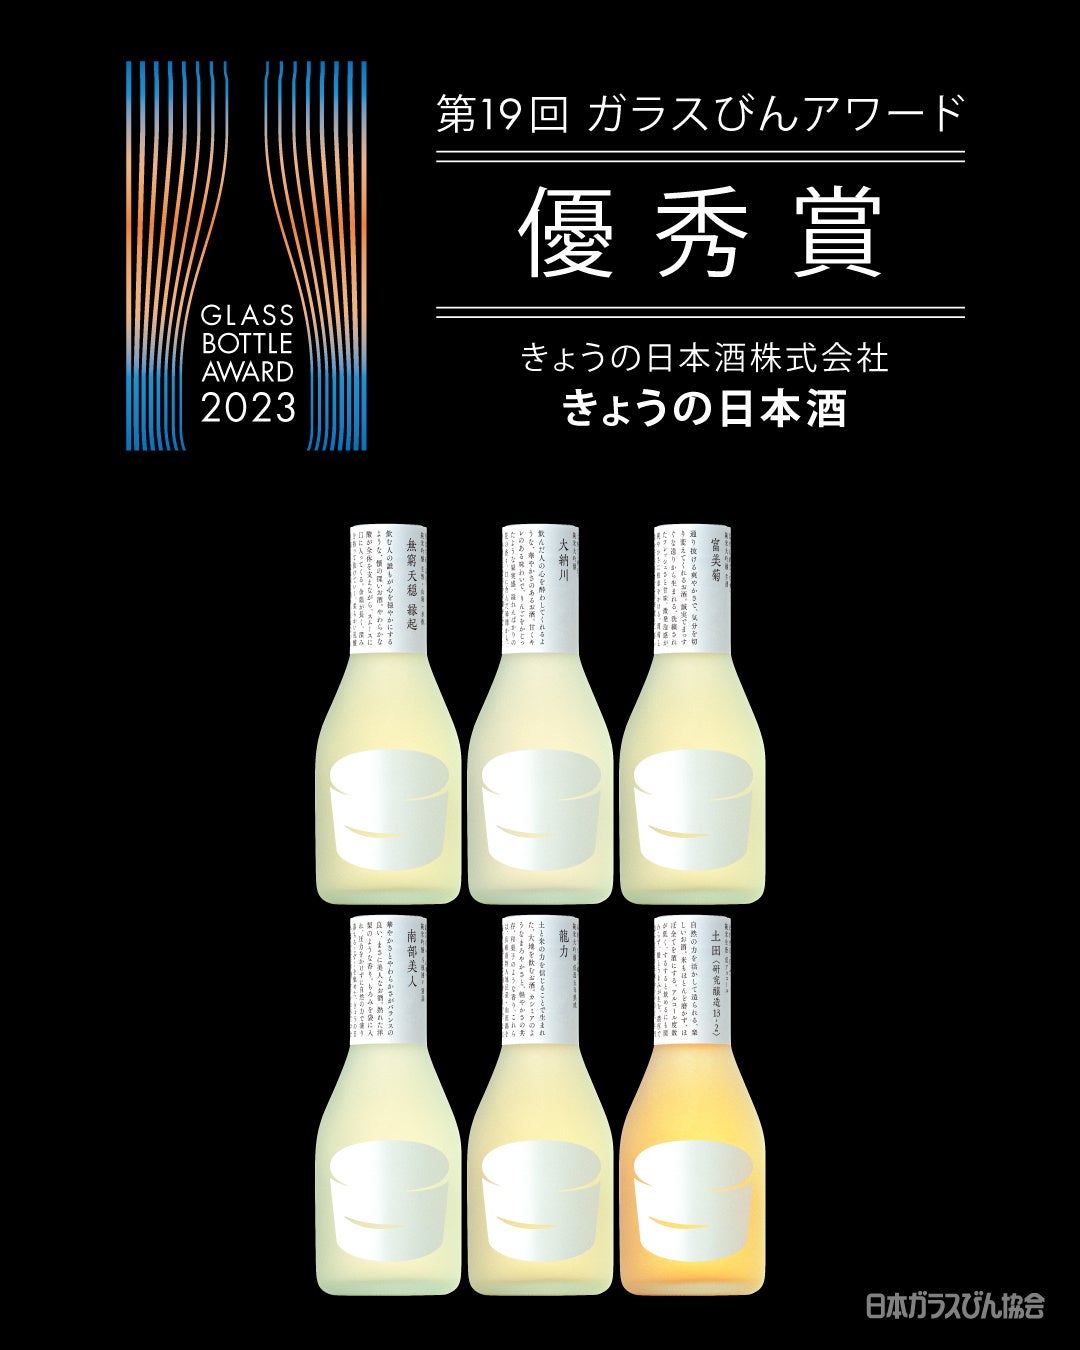 日本酒一合瓶ブランド「きょうの日本酒」、第19回ガラスびんアワードにて優秀賞を受賞